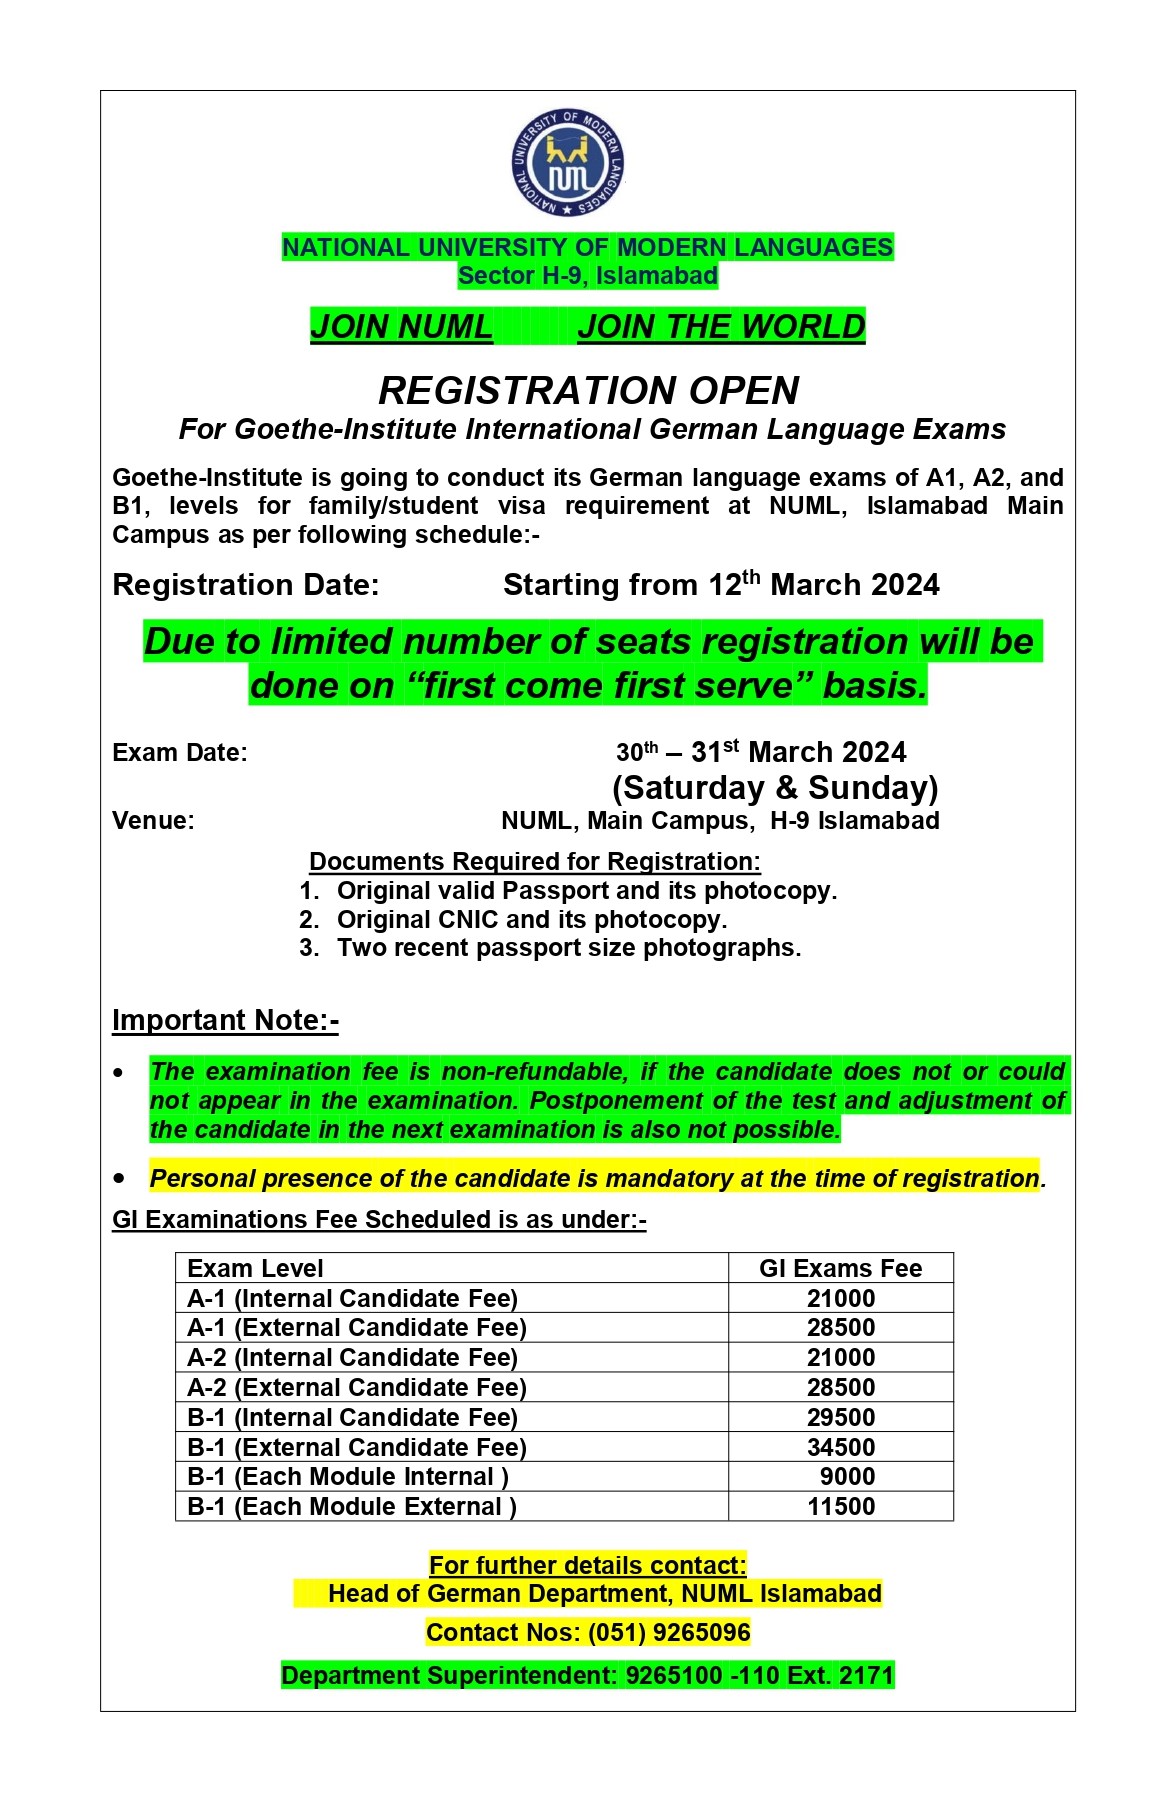 Registration open for Goethe Institute Exam